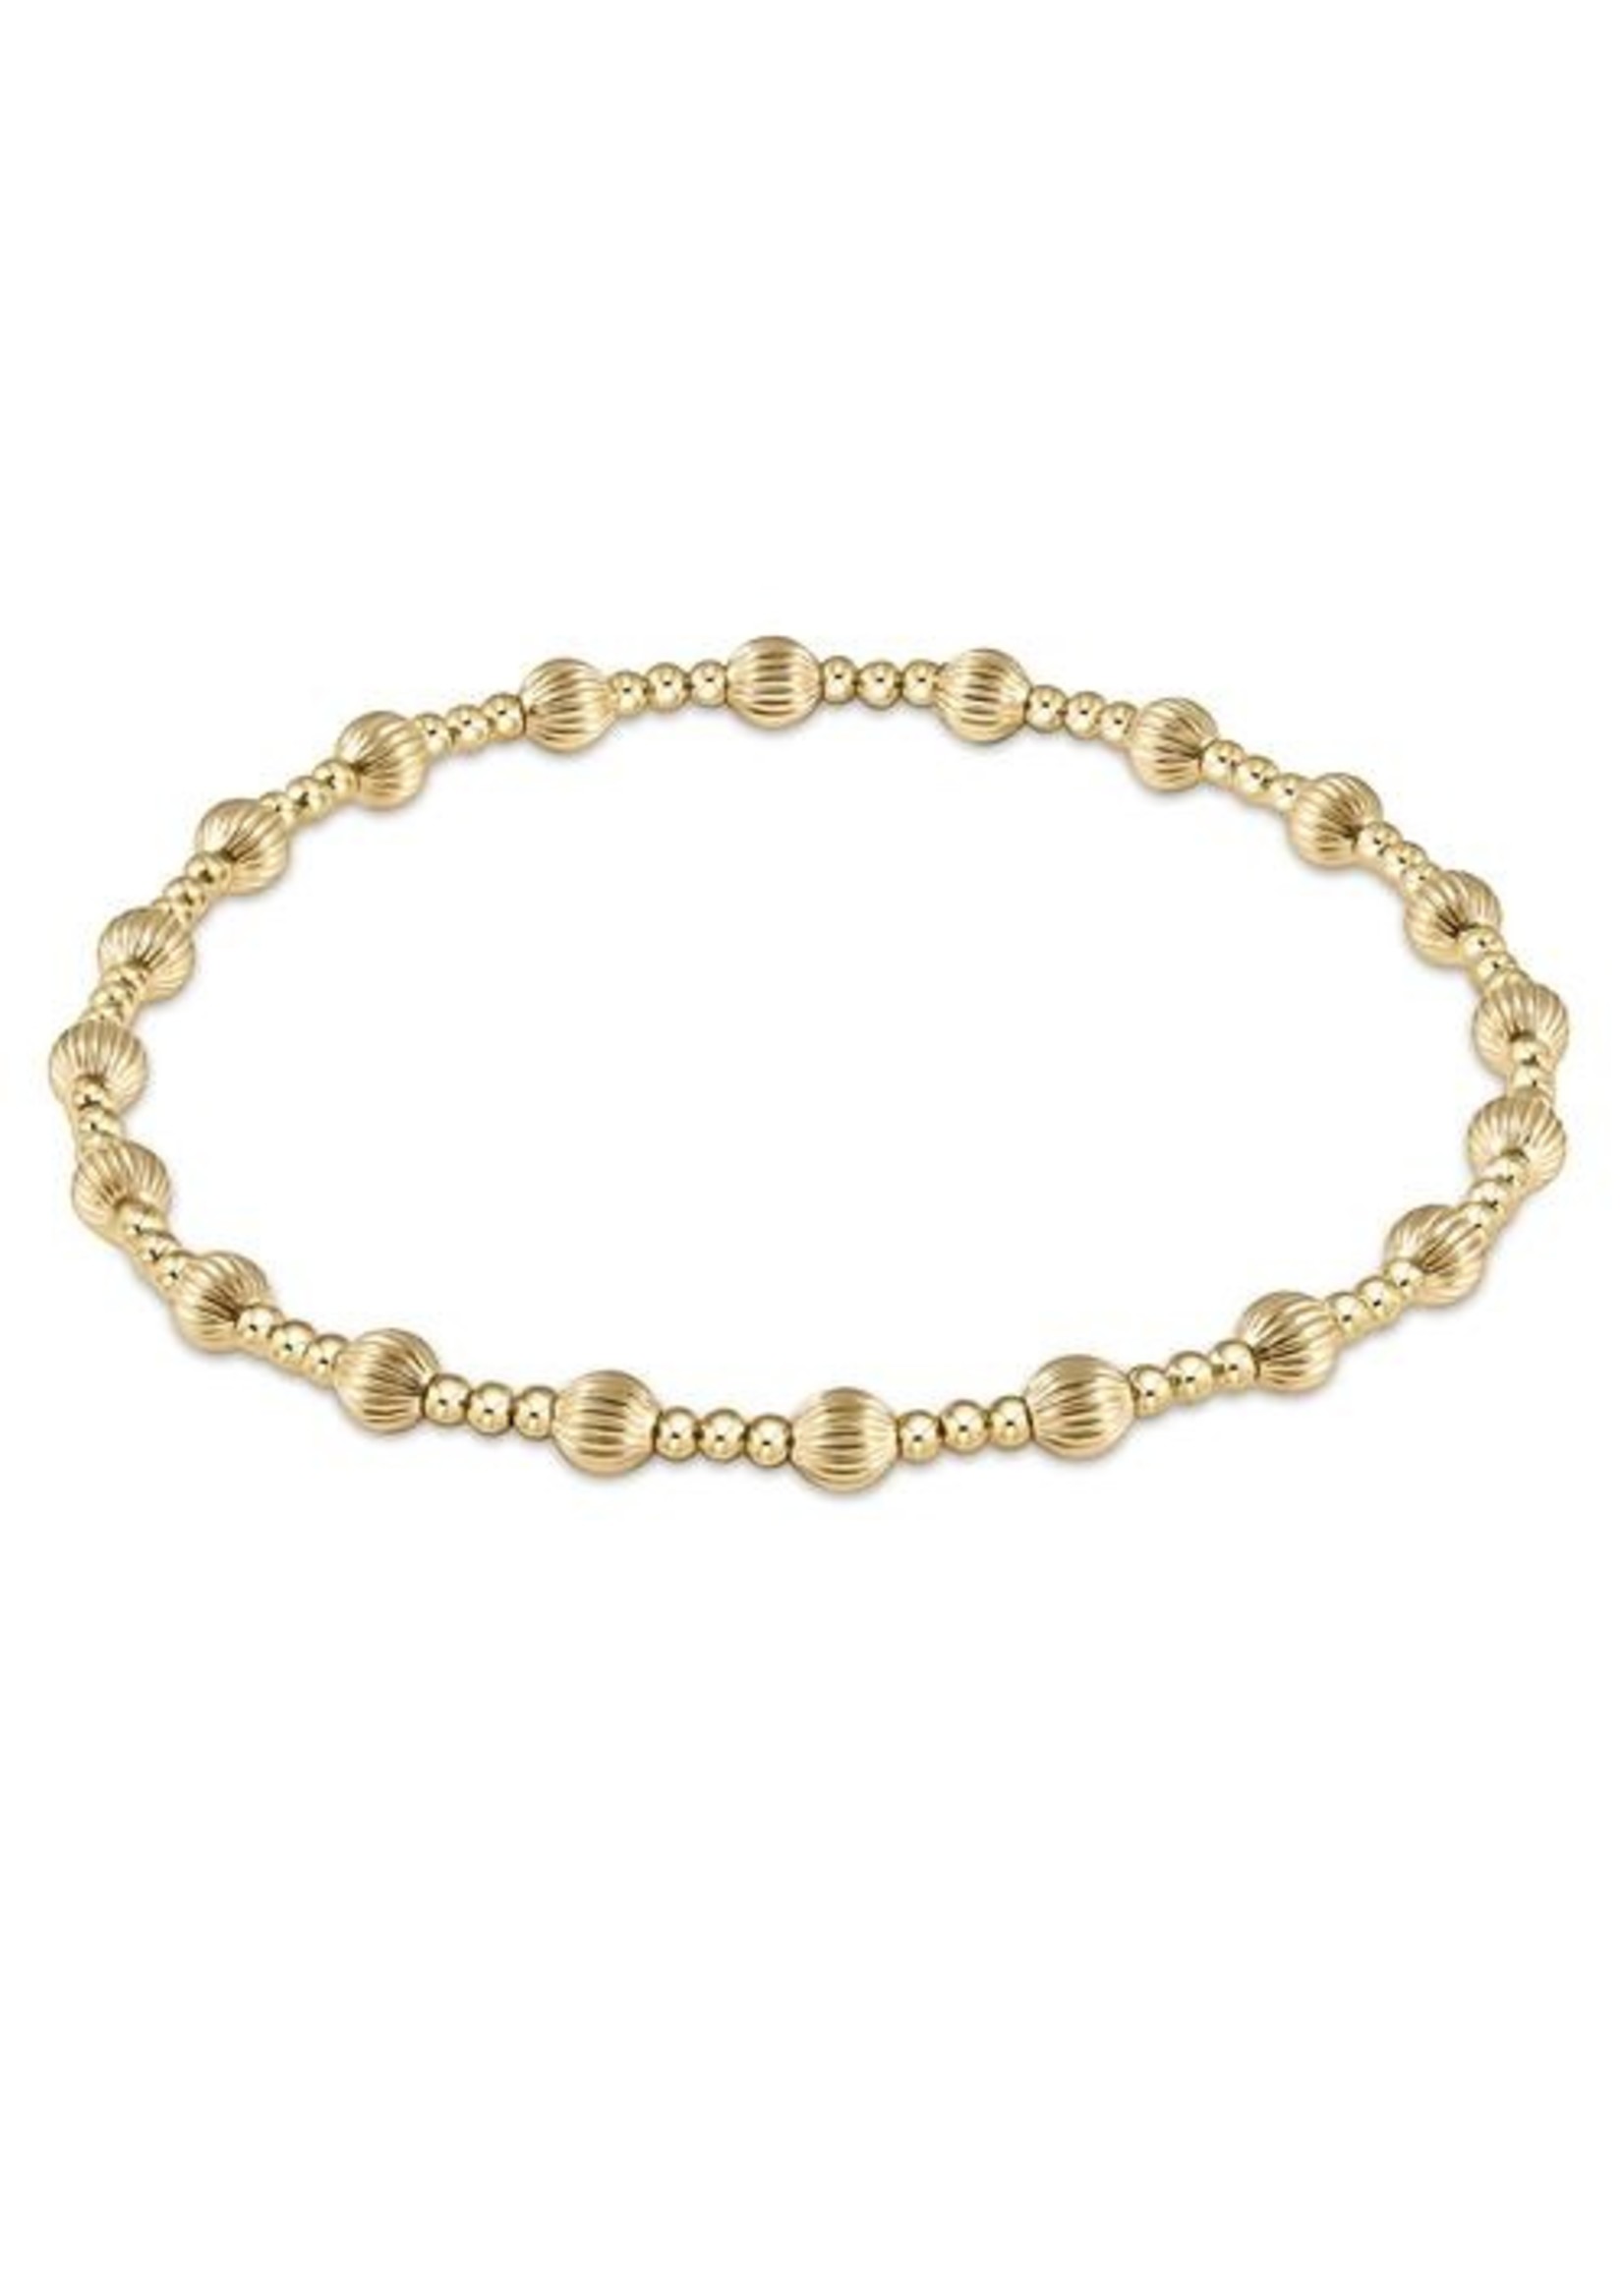 enewton Dignity Sincerity Pattern 4mm Bead Bracelet - Gold